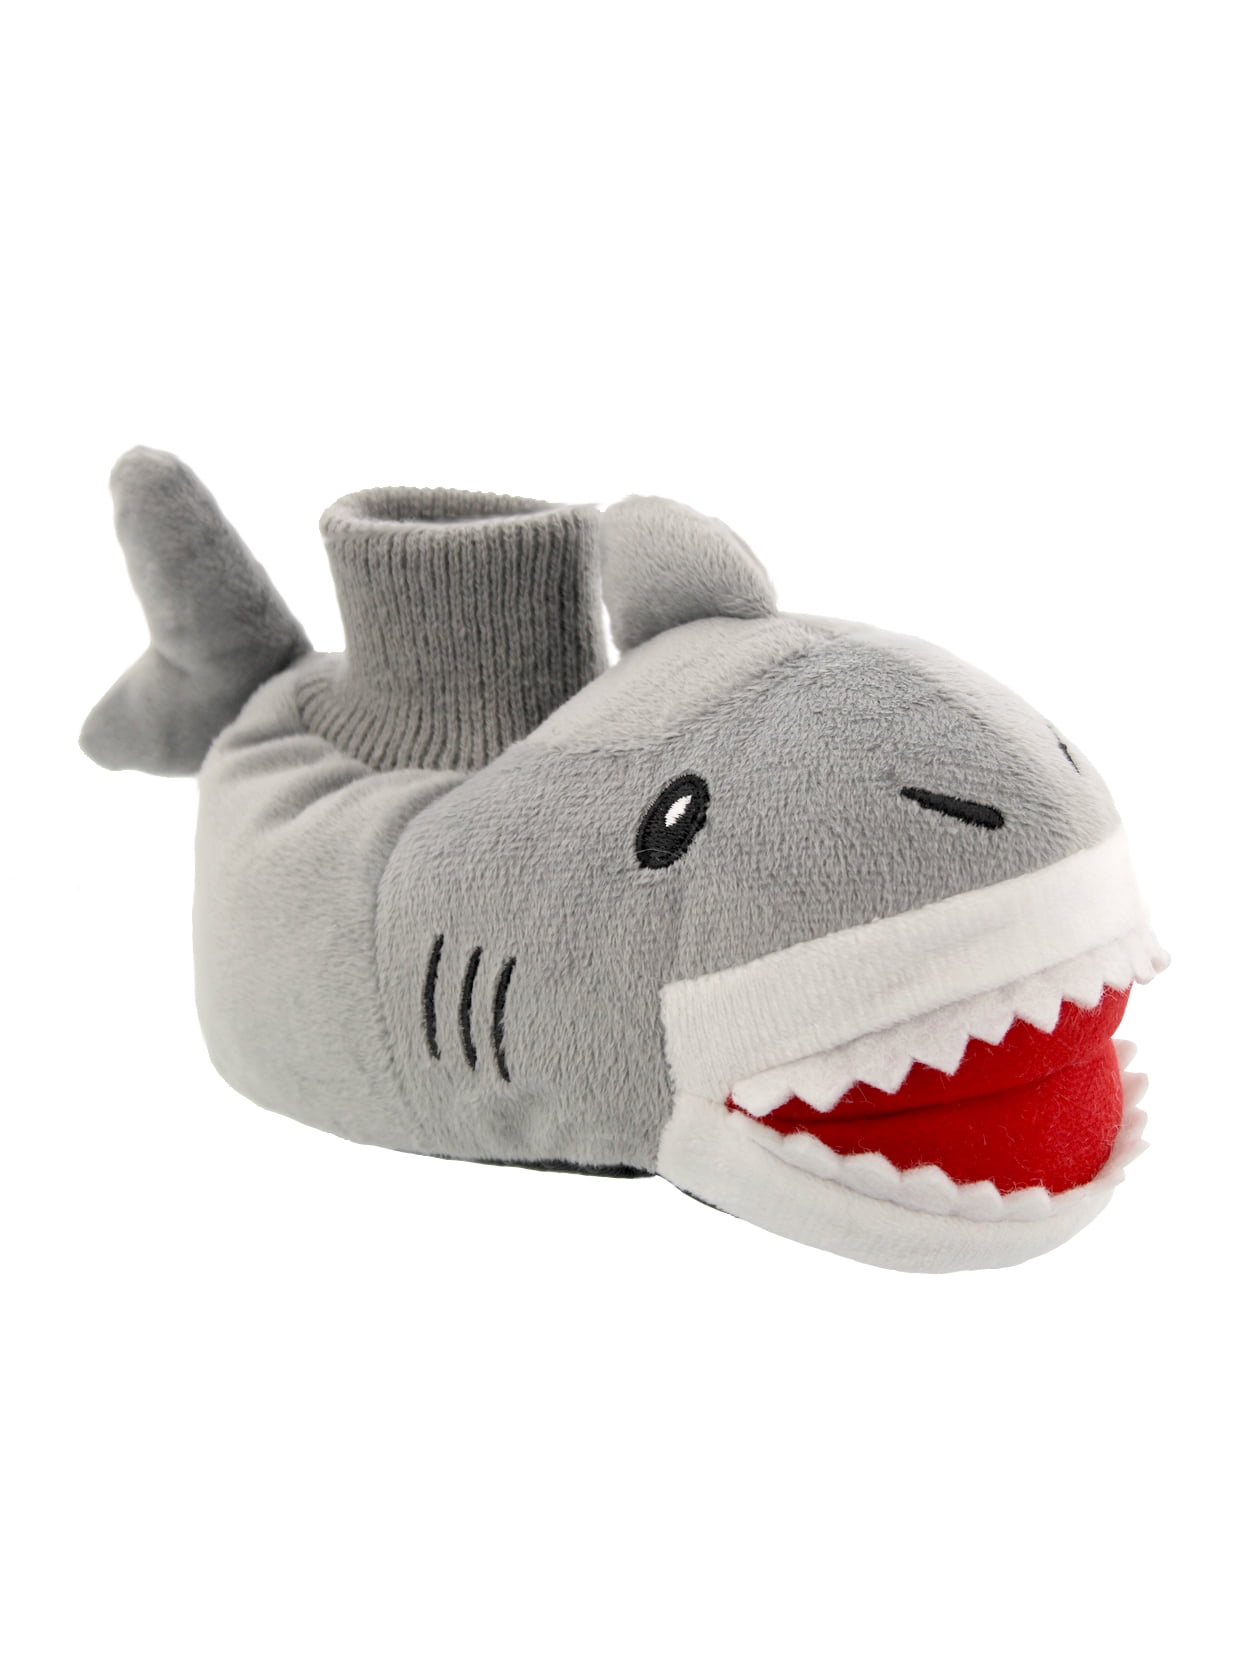 Boys Blue Shark Design Plush Fleece 3D Novelty Slippers in UK Sizes 9-3 